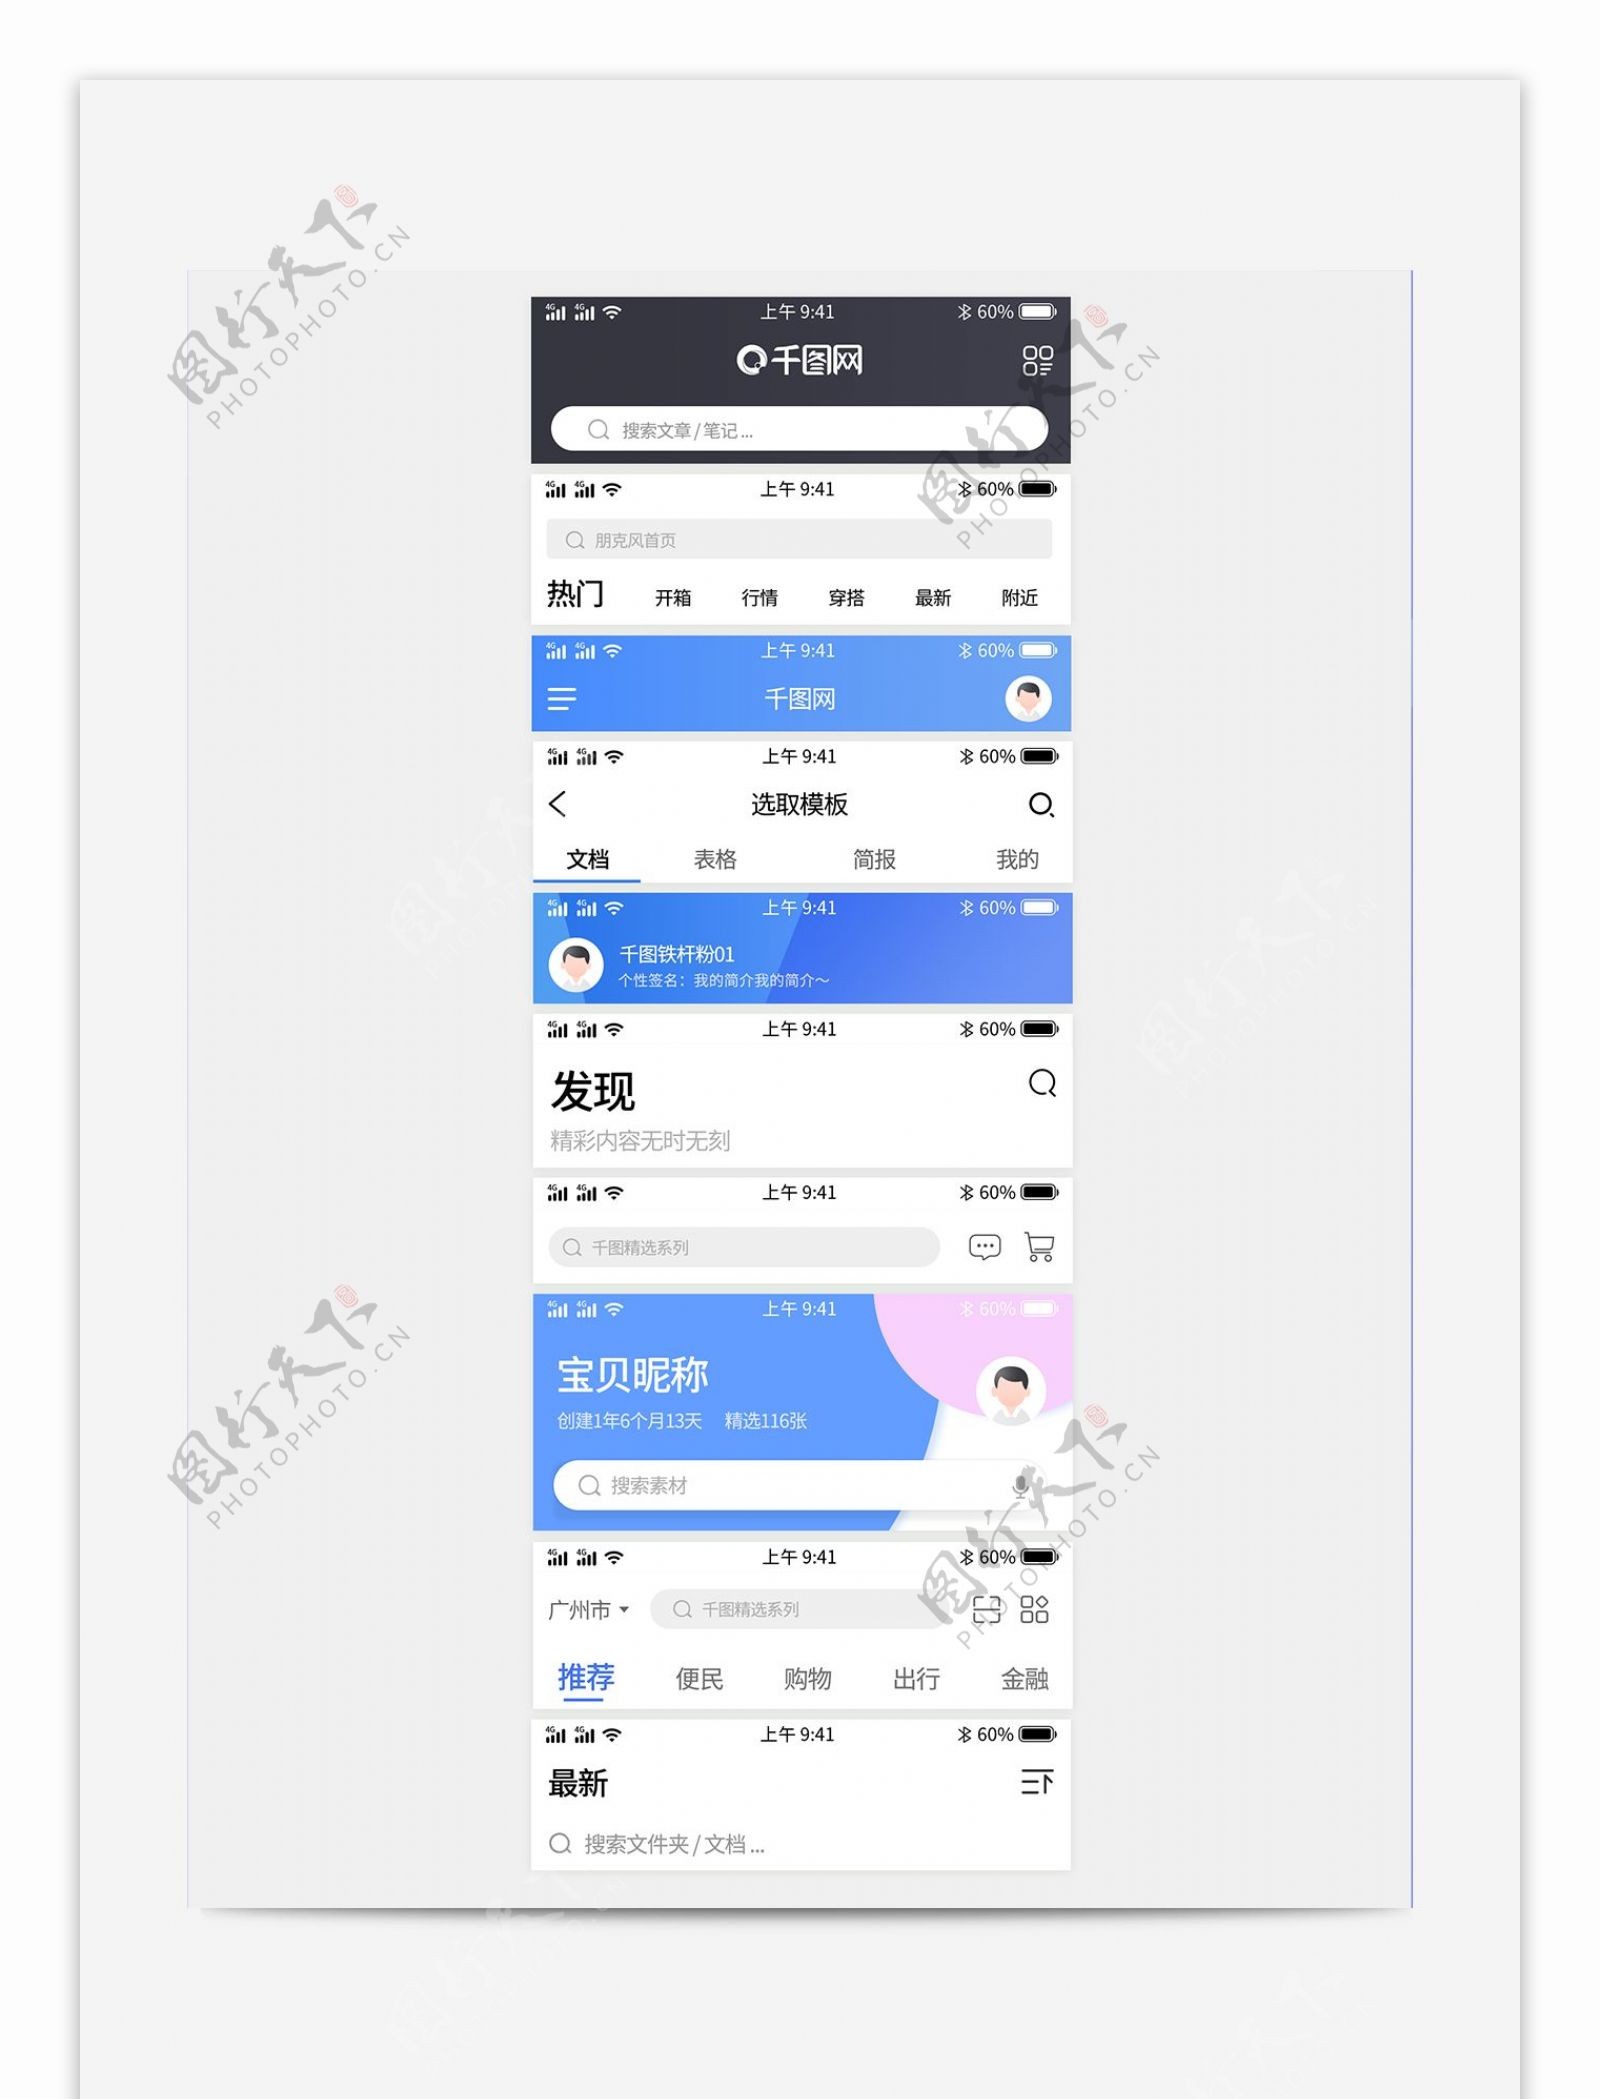 手机app顶部导航条状态栏样式UI设计